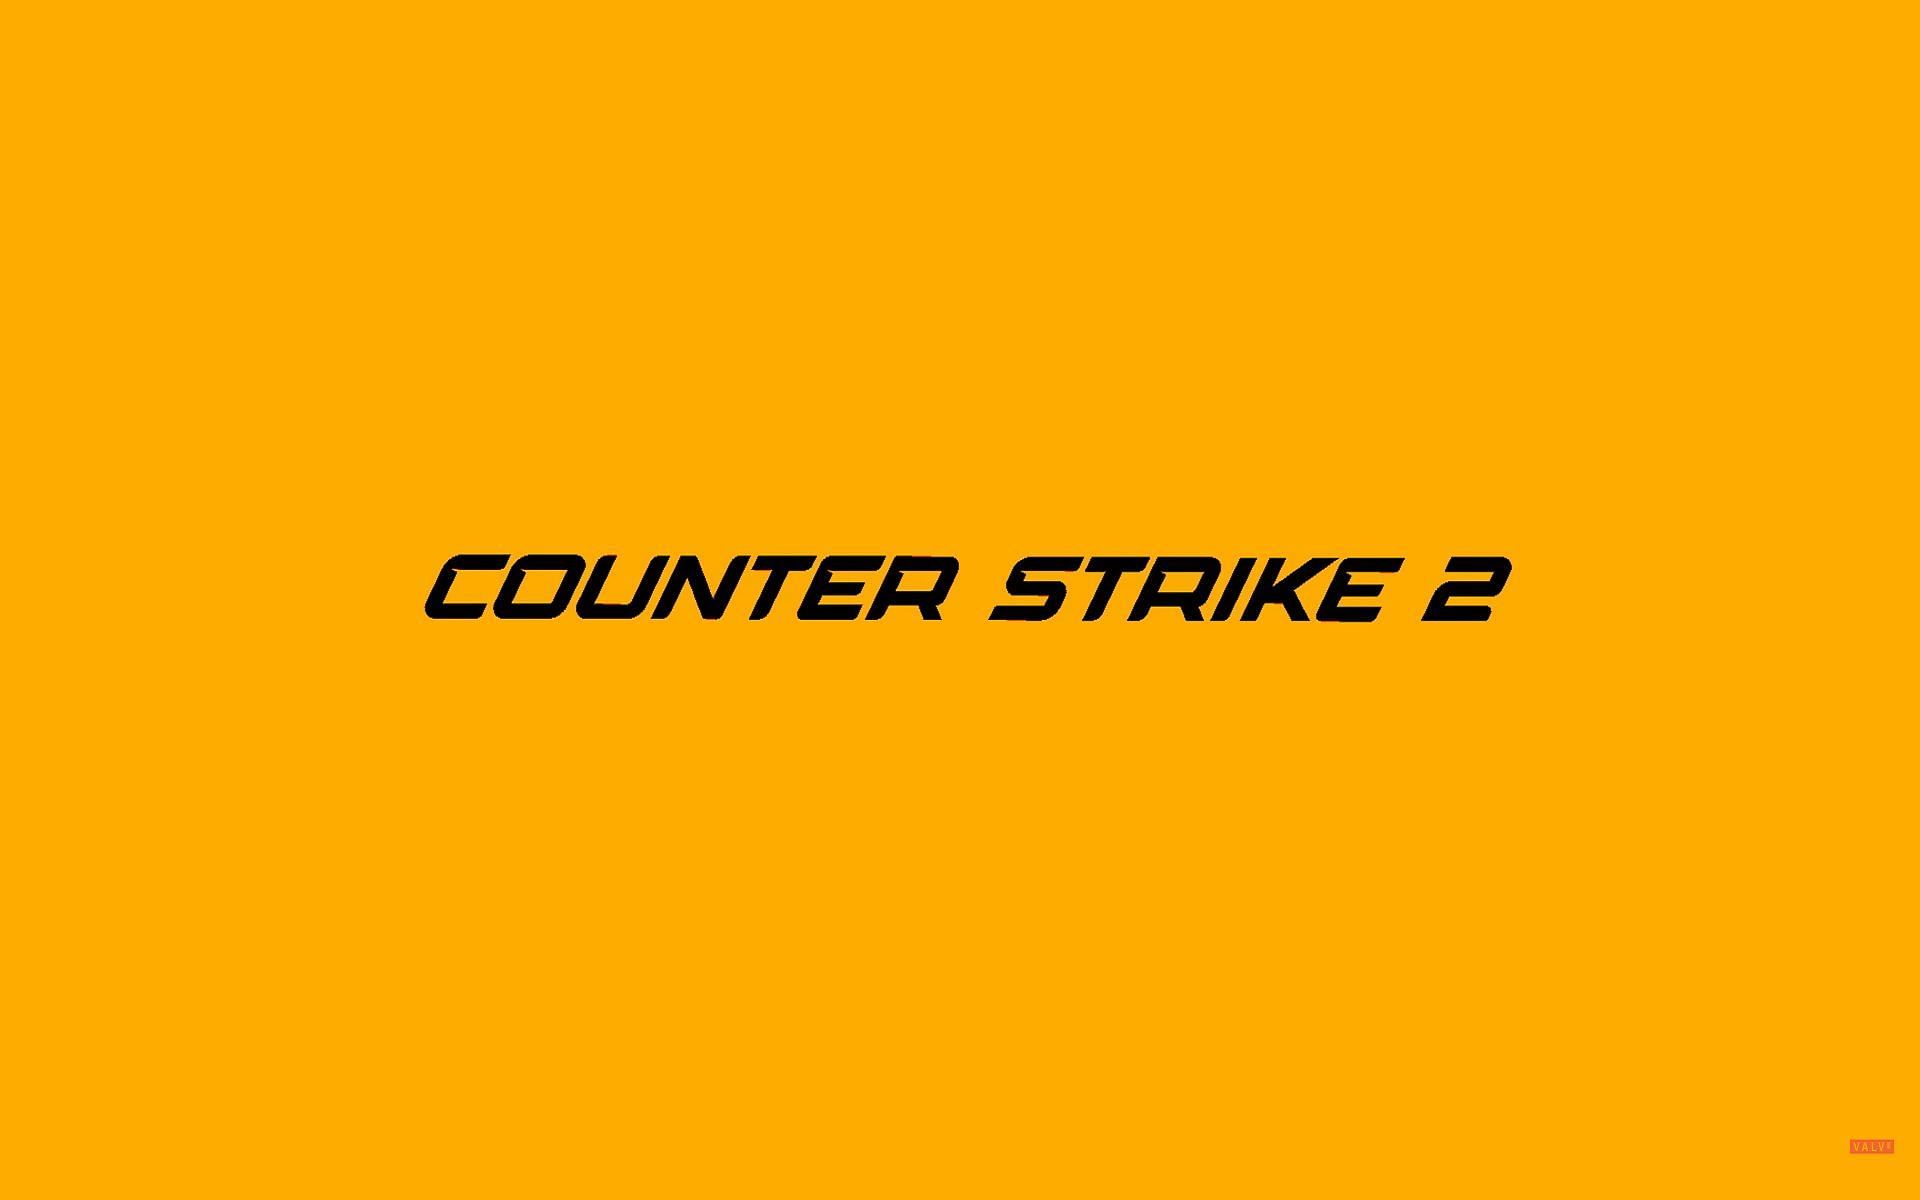 Limited test for Counter Strike 2 details revealed (Image via Valve)